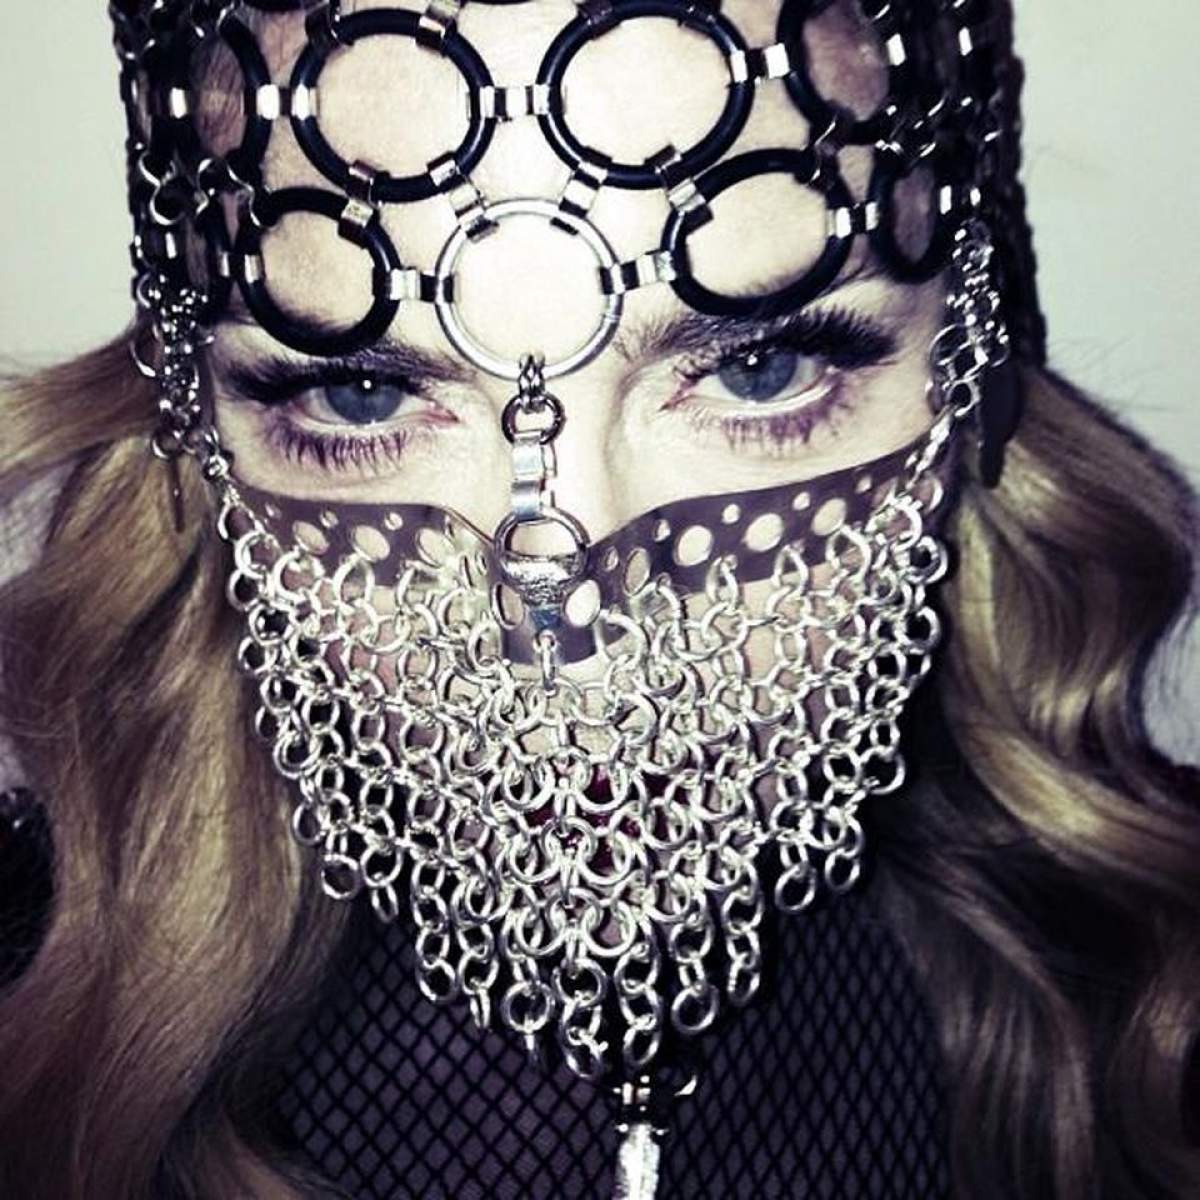 Gestul cu care Madonna i-a scandalizat pe musulmani!  "Îşi pune viaţa în pericol!", strigă îngrijoraţi prietenii divei